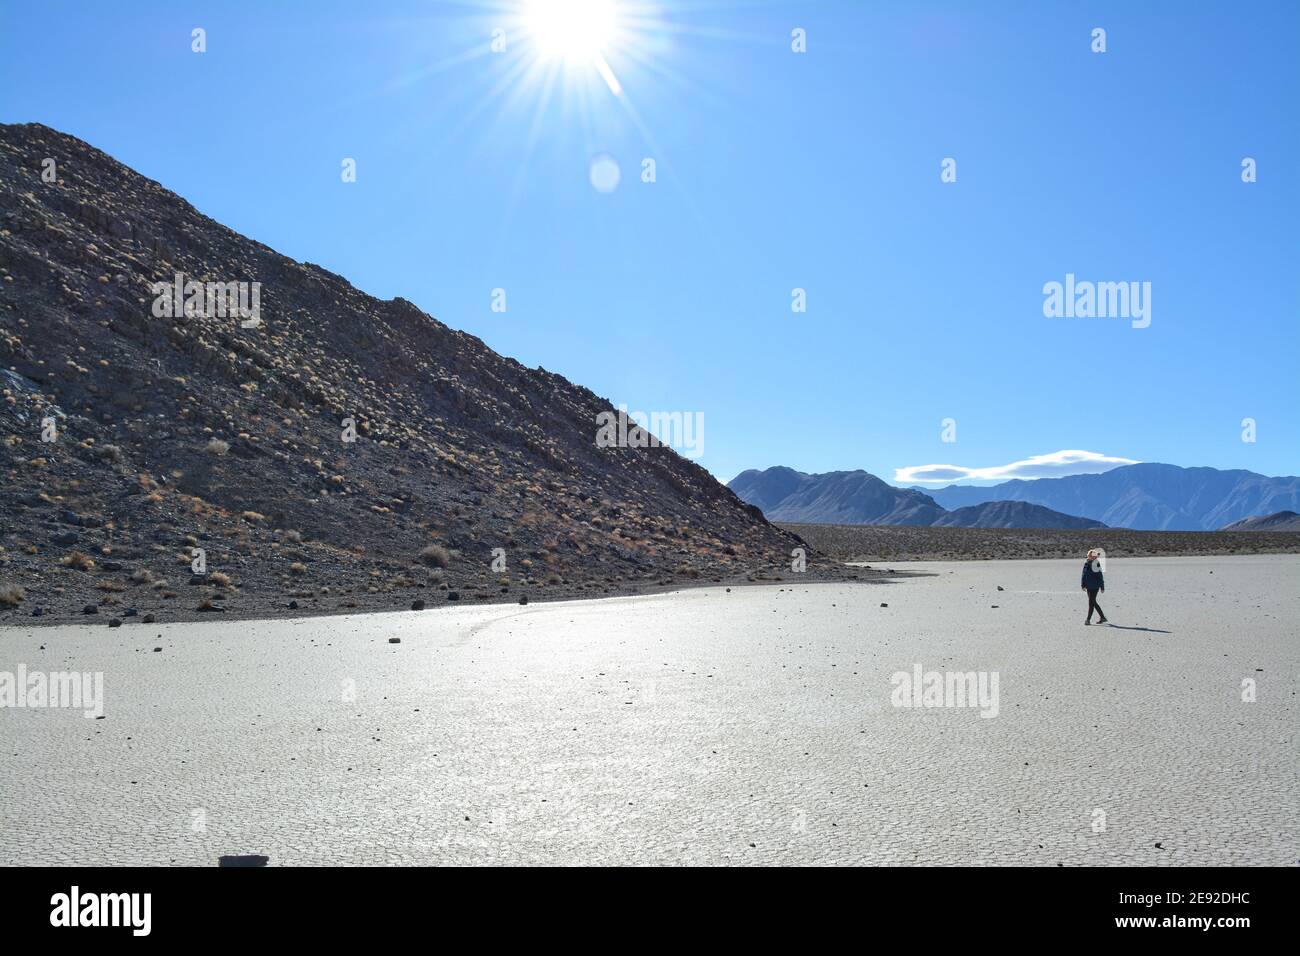 Femme marchant sur l'hippodrome Playa lors d'une journée froide de décembre dans le parc national de la Vallée de la mort, magnifique paysage avec les rochers en mouvement laissant des pistes Banque D'Images